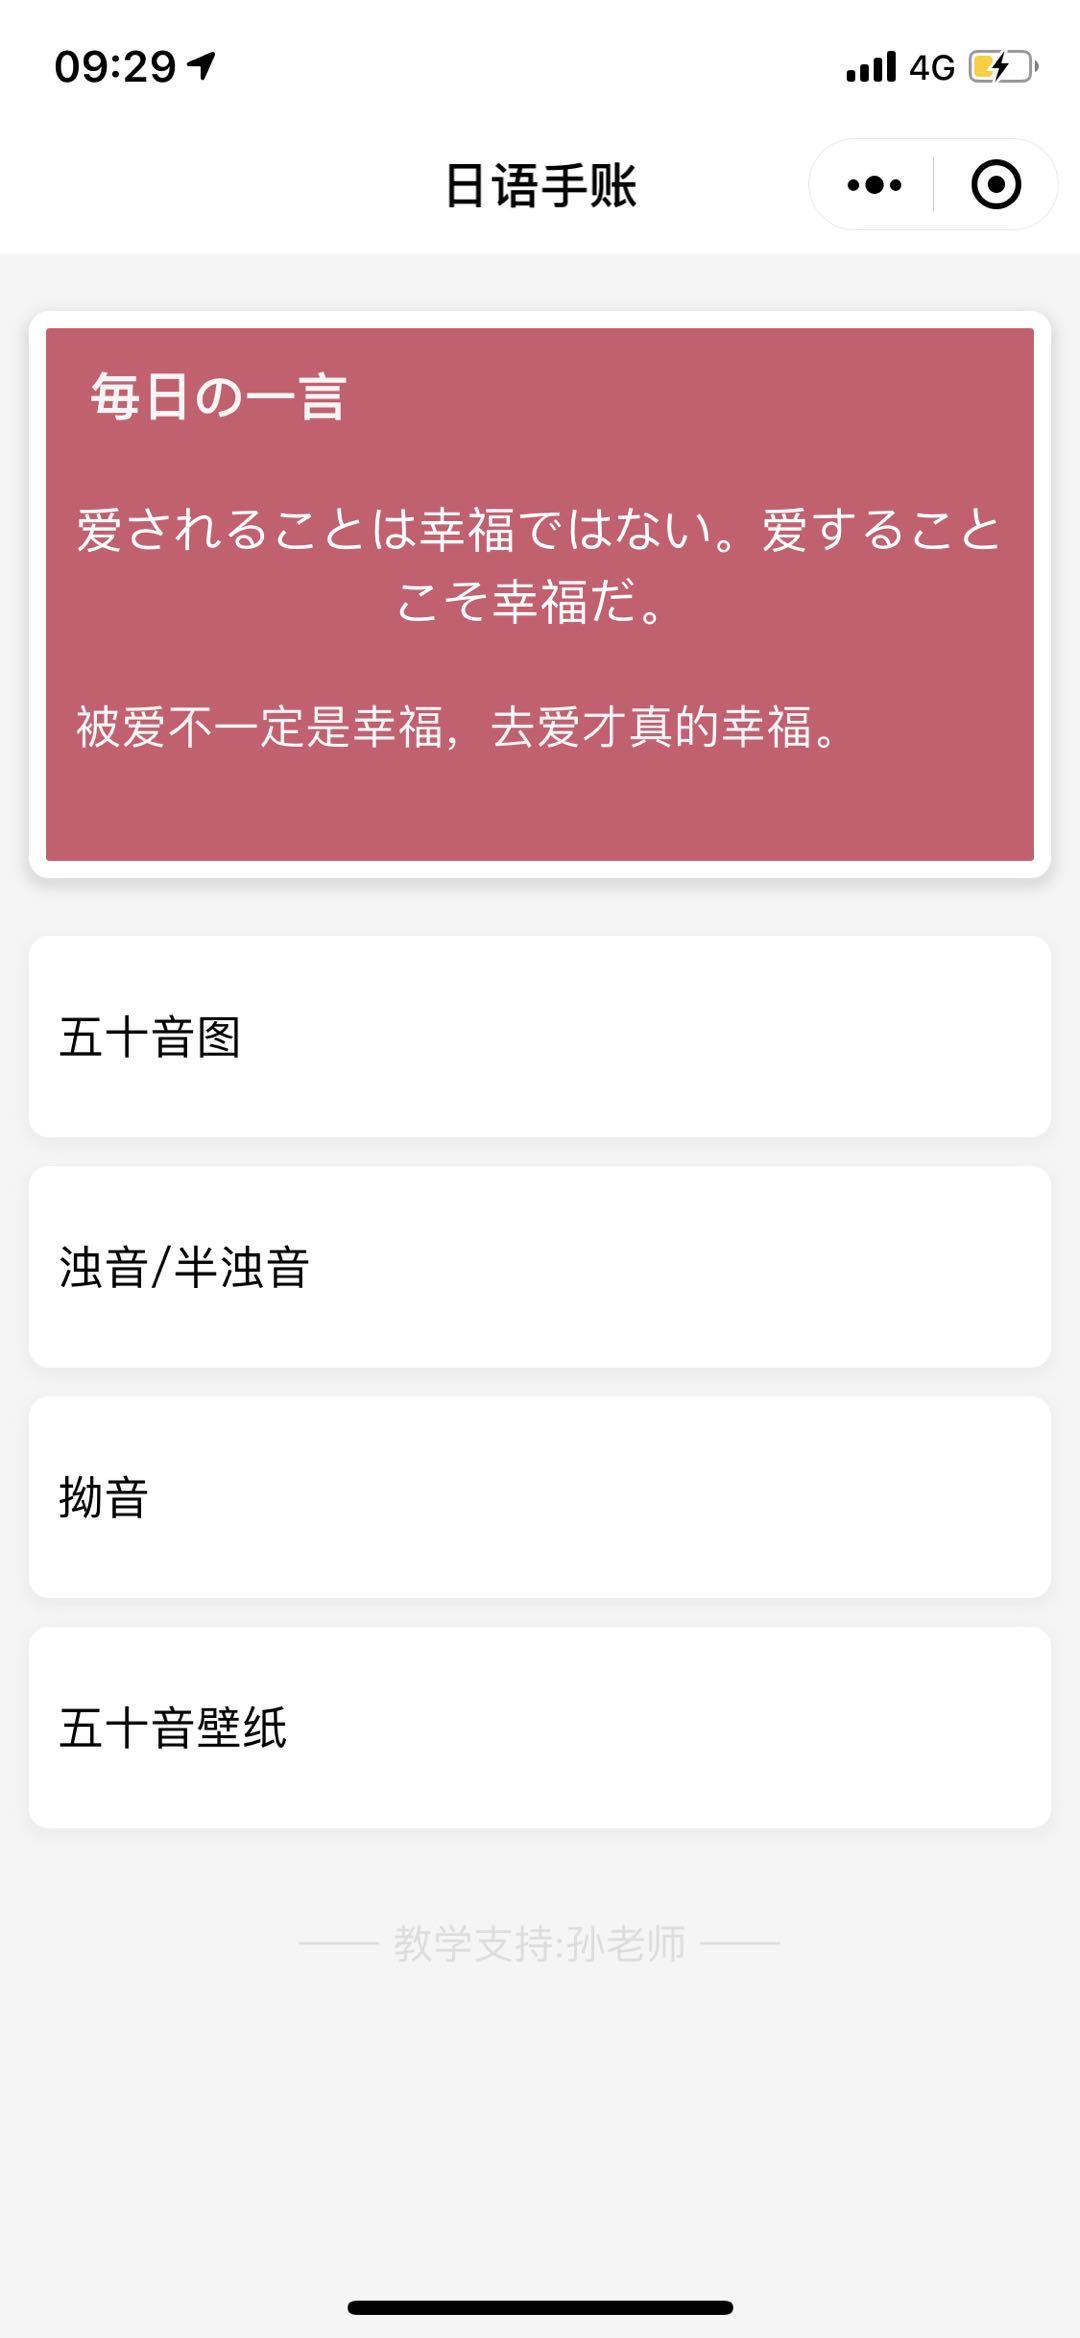 日语手账_日语手账小程序_日语手账微信小程序